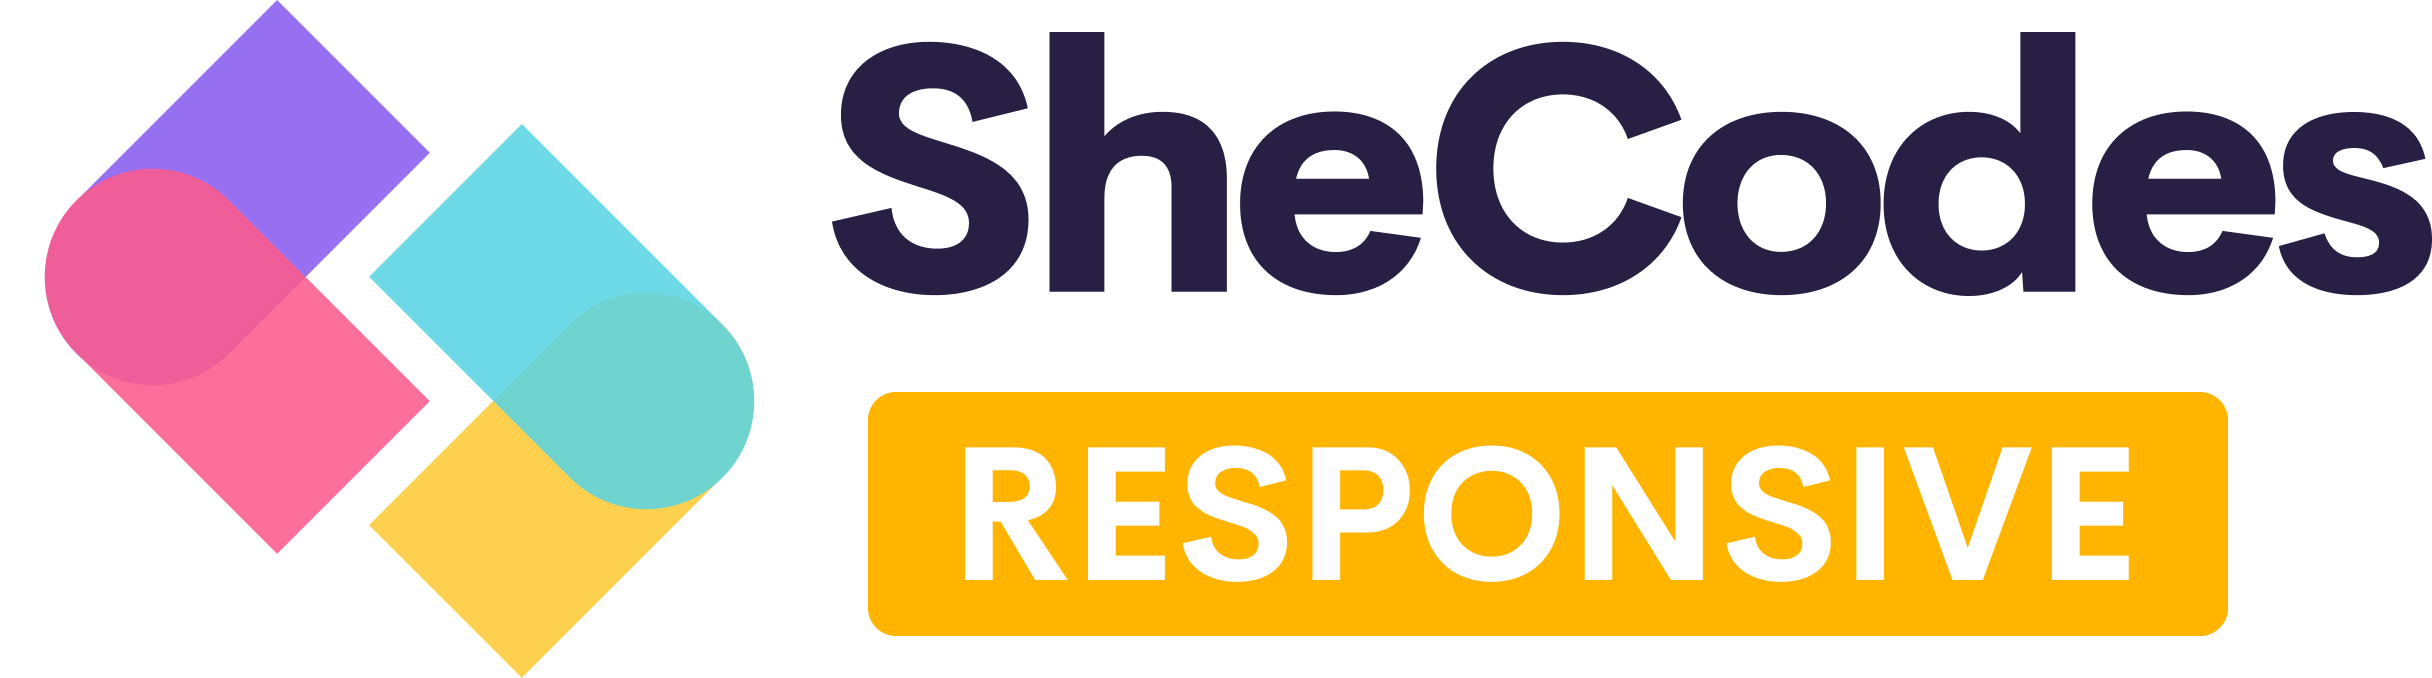 SheCodes Responsive course logo